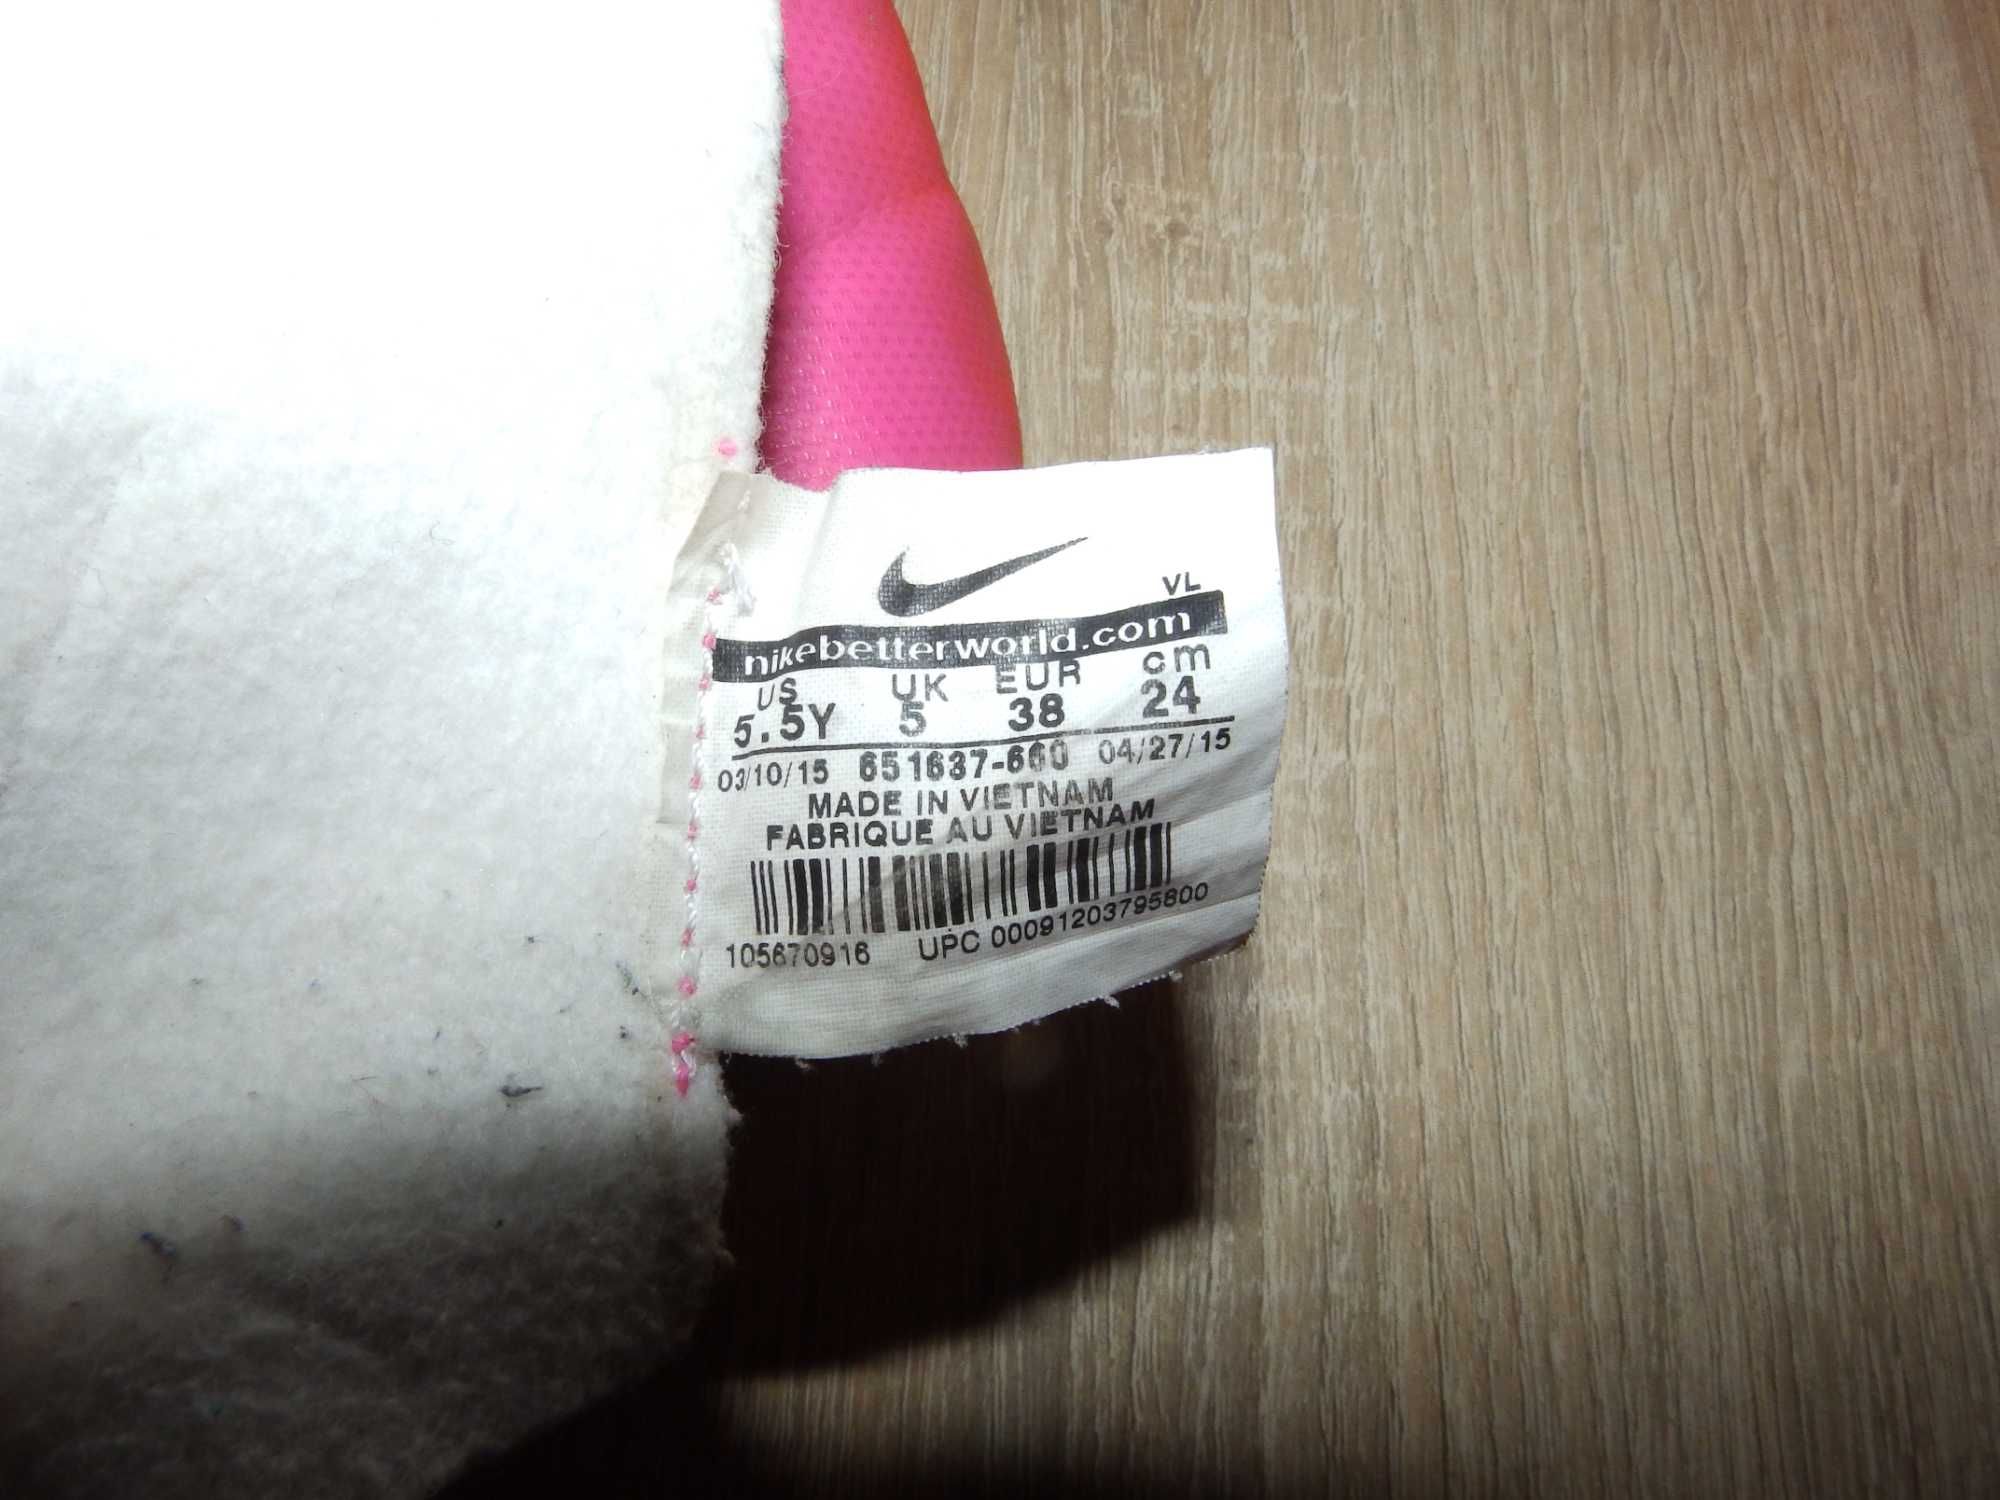 Подростковые бутсы Nike JR mercurial victopy v AG 651637-660 Размер 38